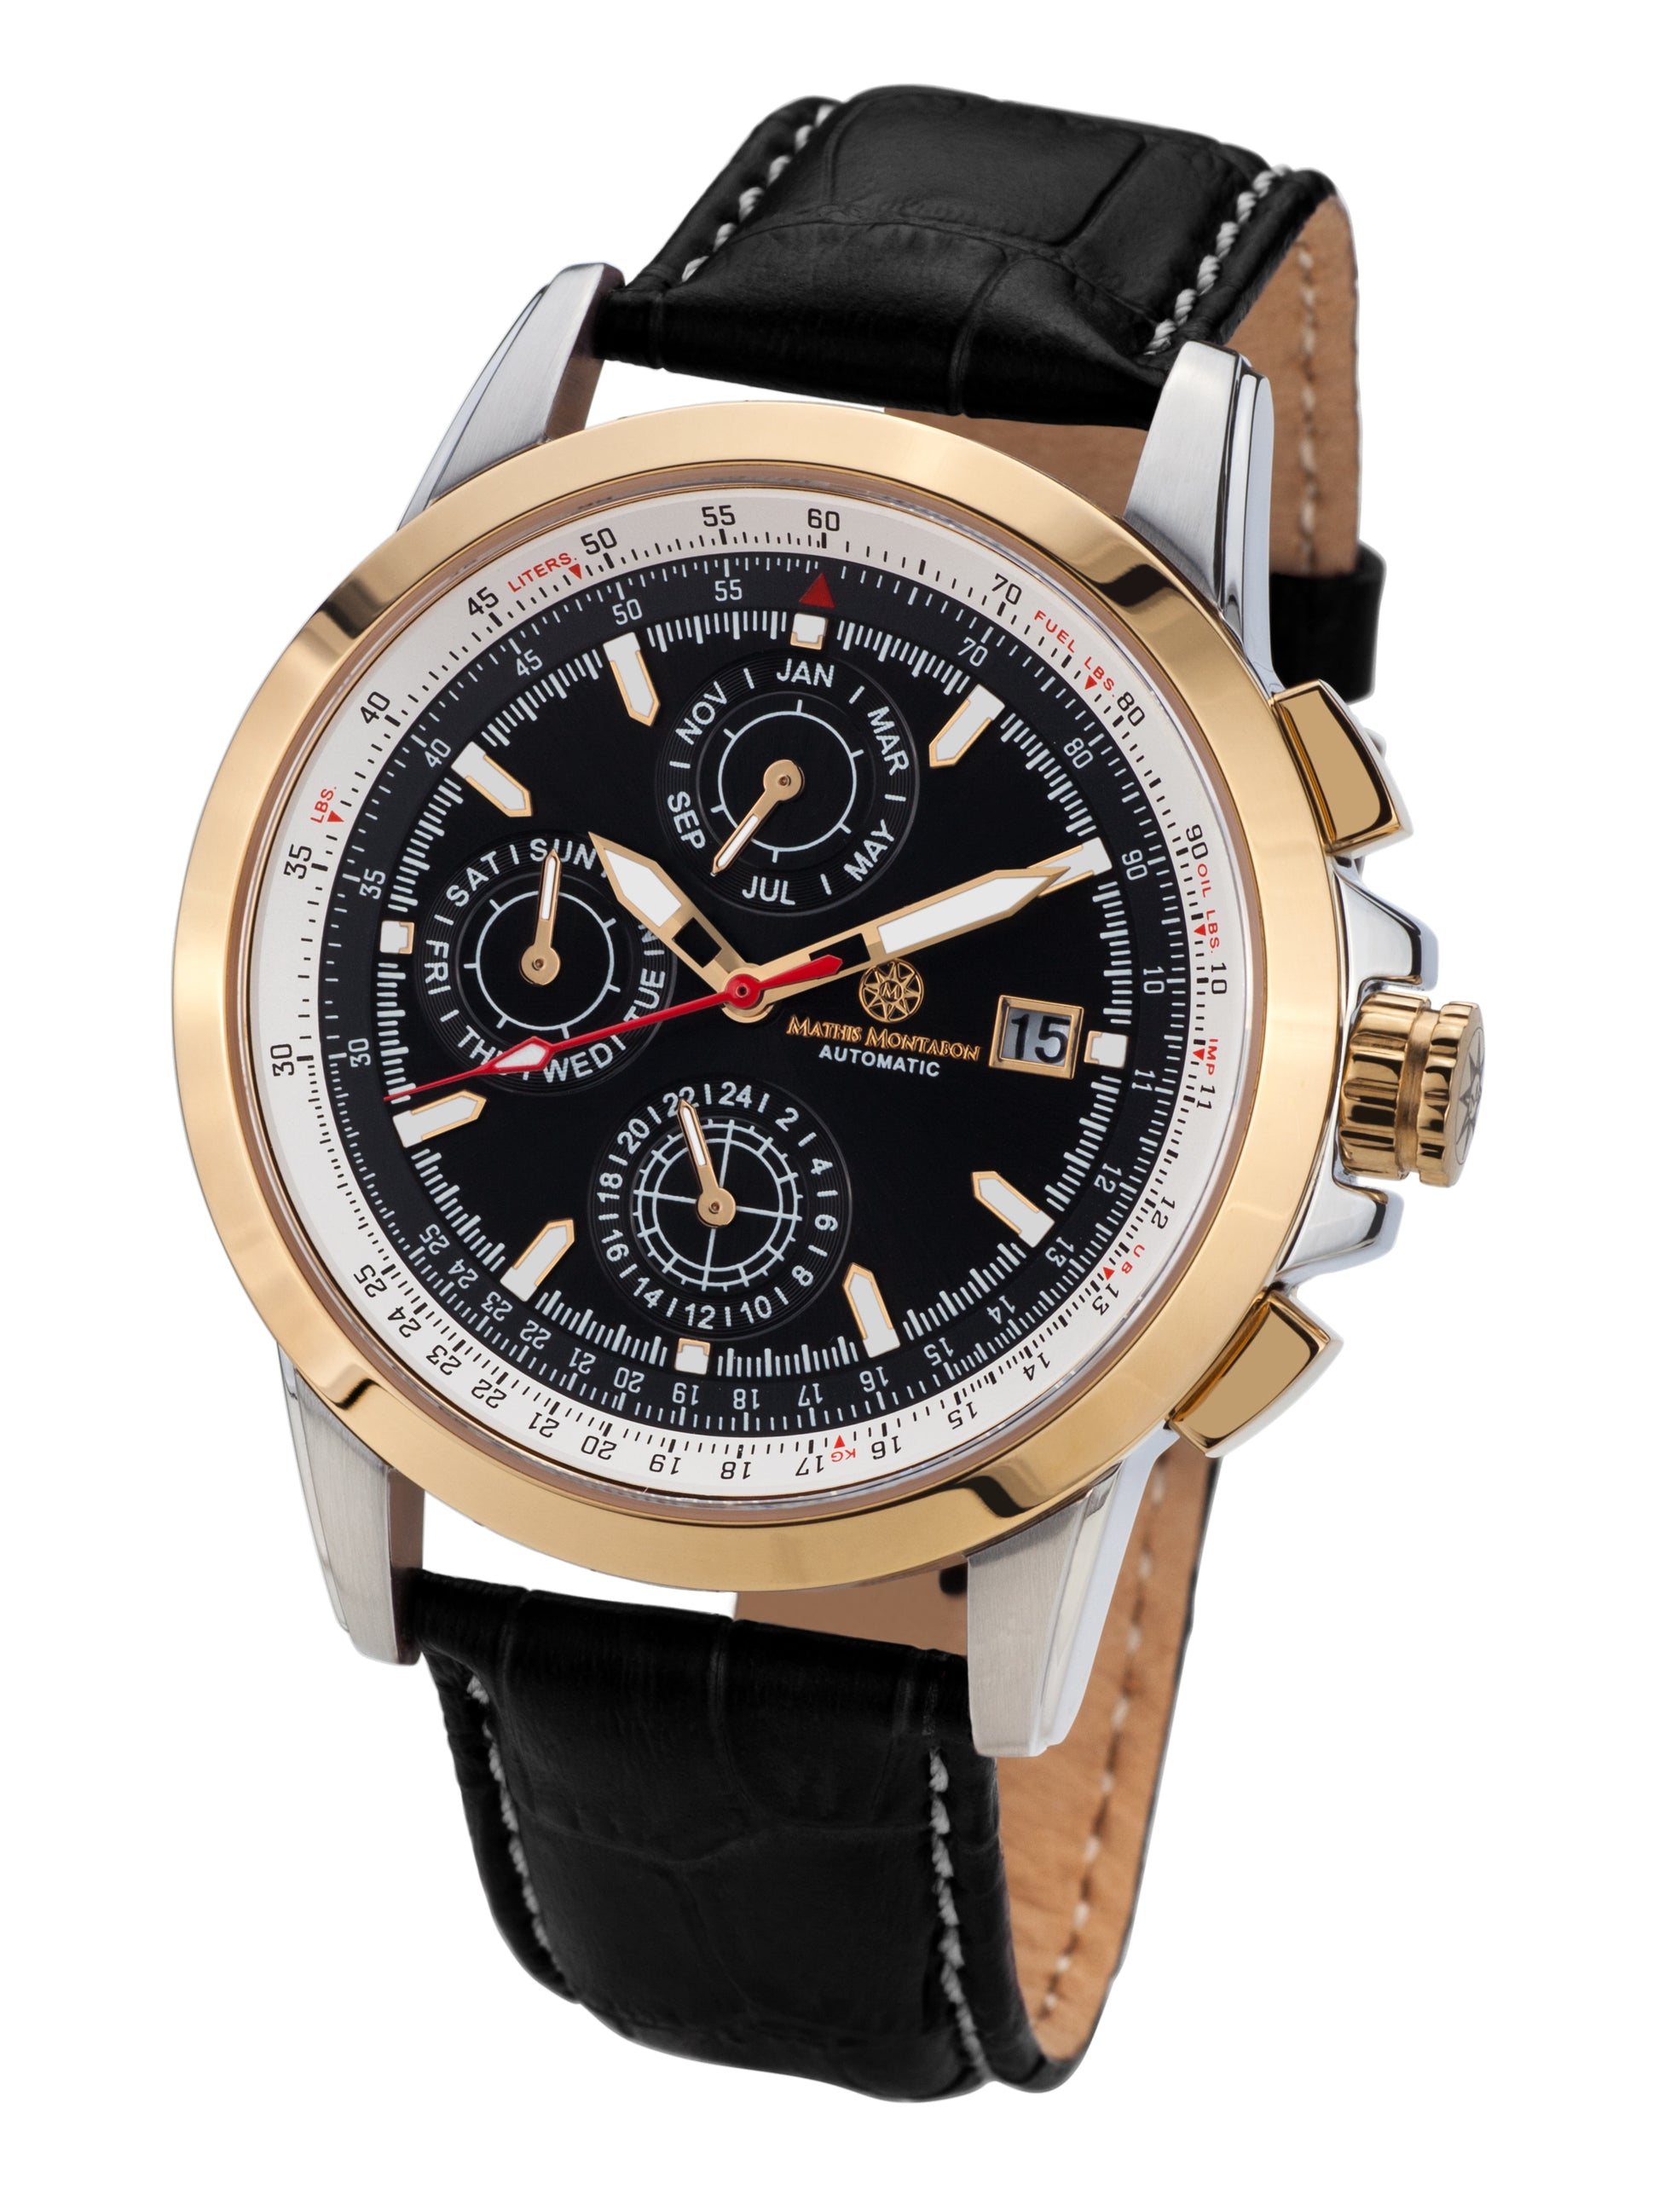 Automatic watches — Aerotime — Mathis Montabon — gold schwarz